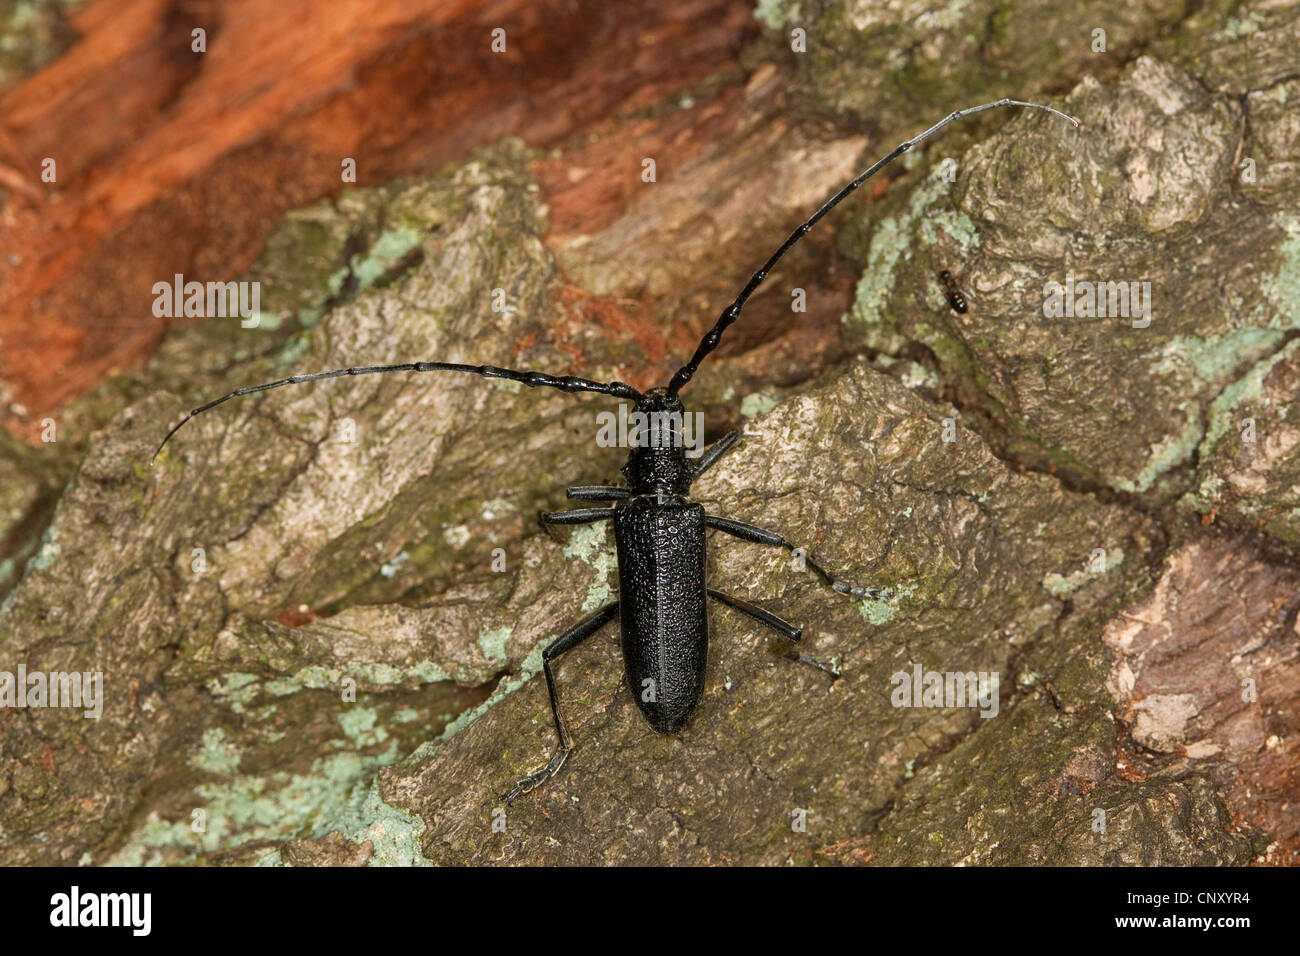 Hêtre, chêne petit scarabée capricorne capricorne Cerambyx scopolii (coléoptère), assis sur l'écorce, Allemagne Banque D'Images